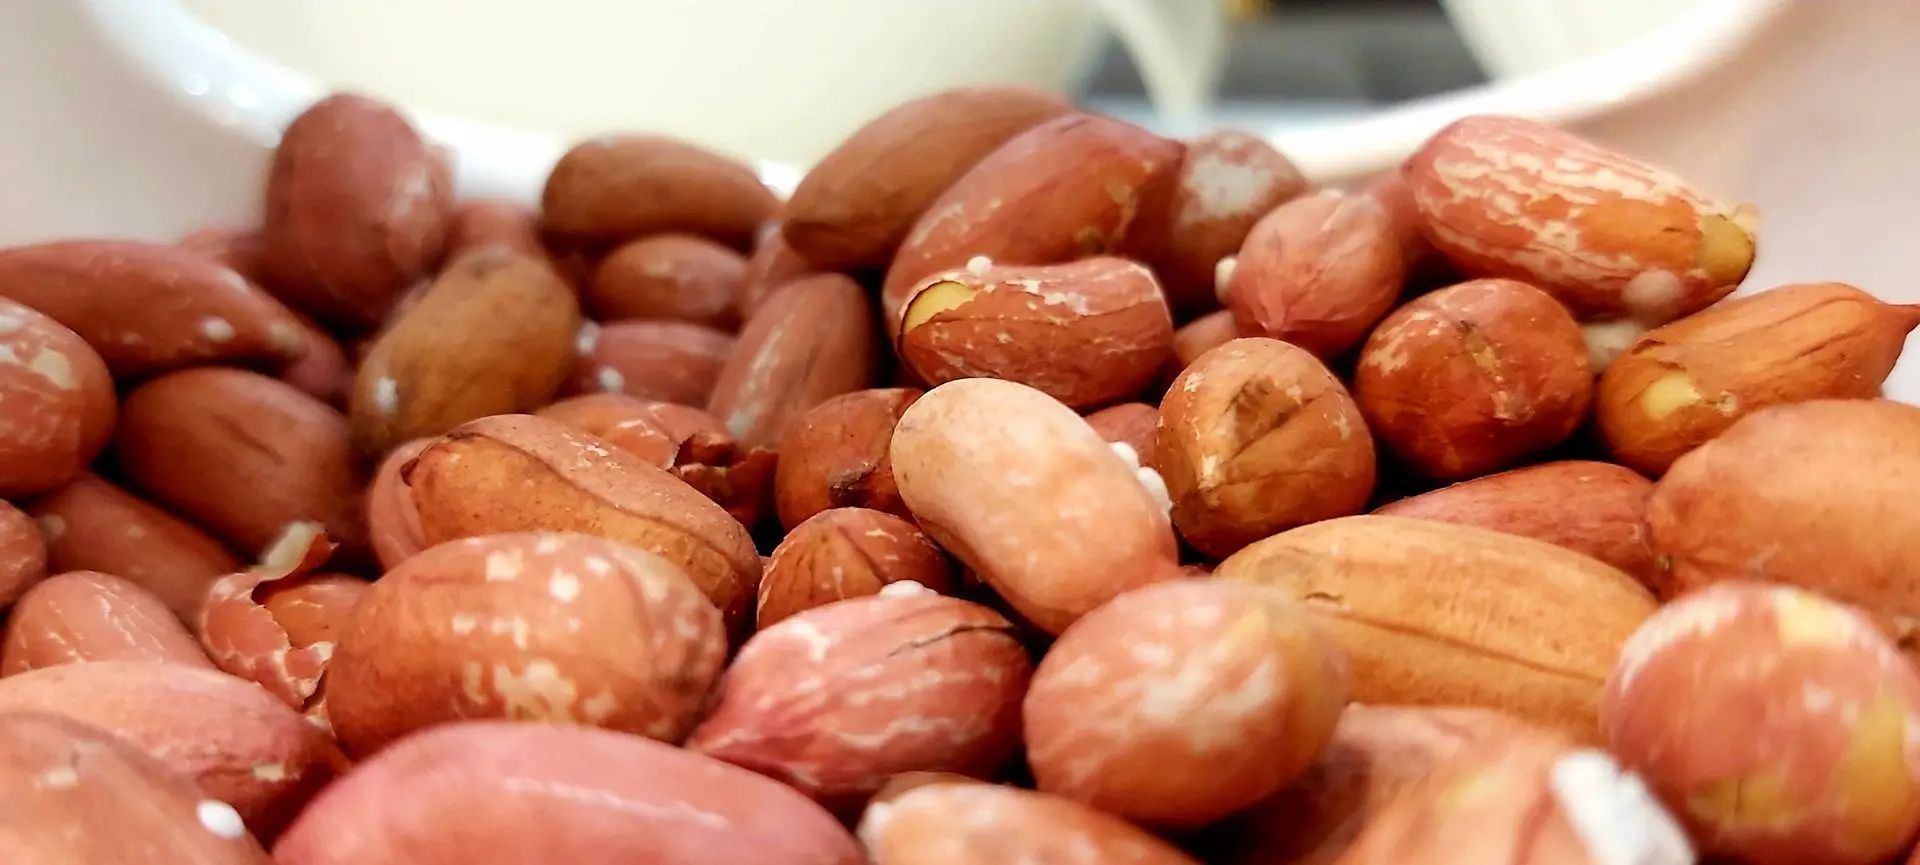 Ймовірно, вчені зрозуміли, як уникнути розвитку алергії на арахіс.